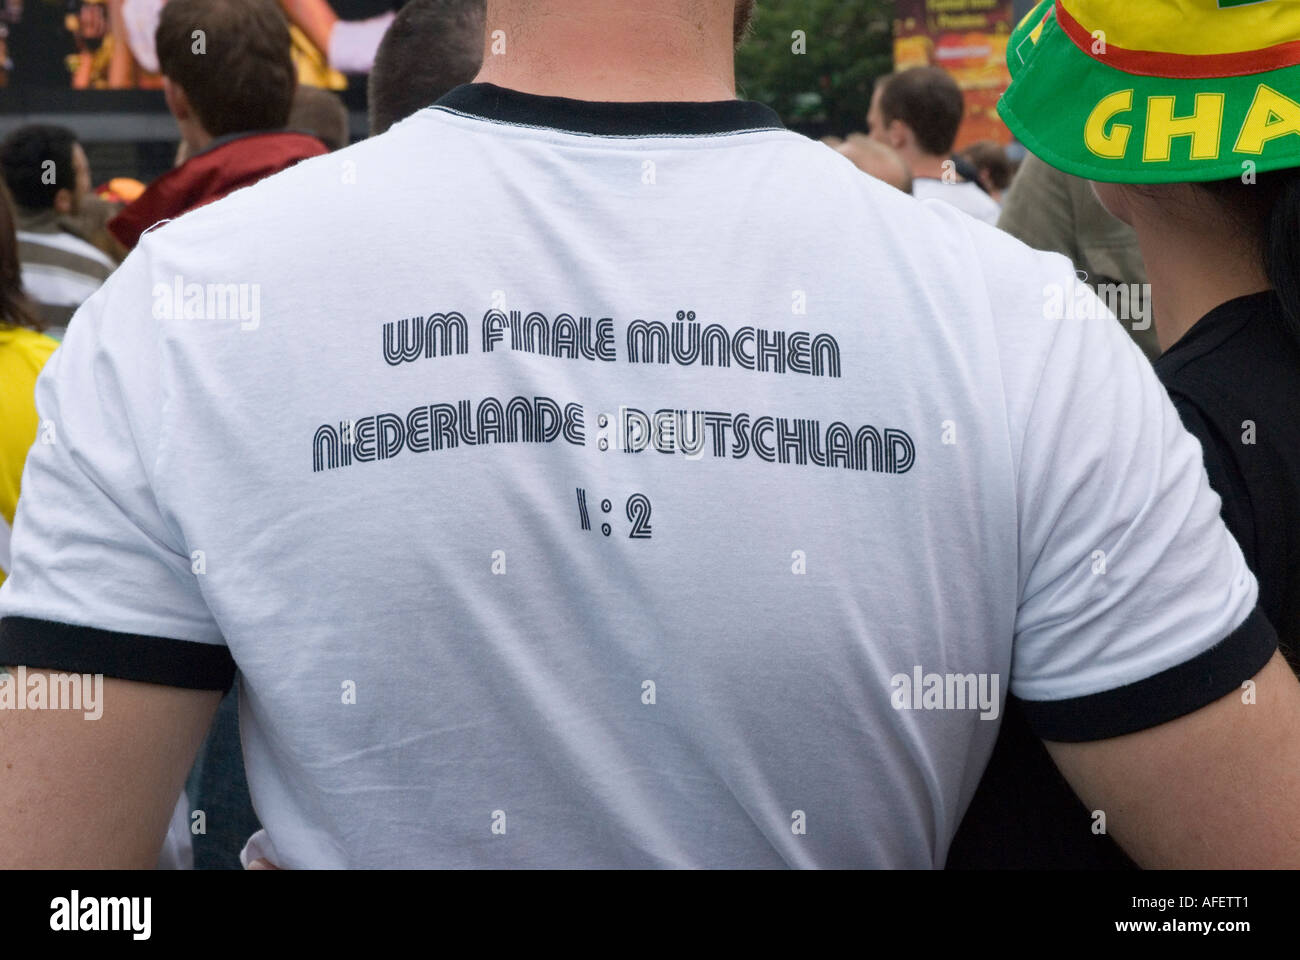 Un fan de football allemand portant un t shirt commémorant la date et le score de la finale de la Coupe du Monde 1974 Banque D'Images